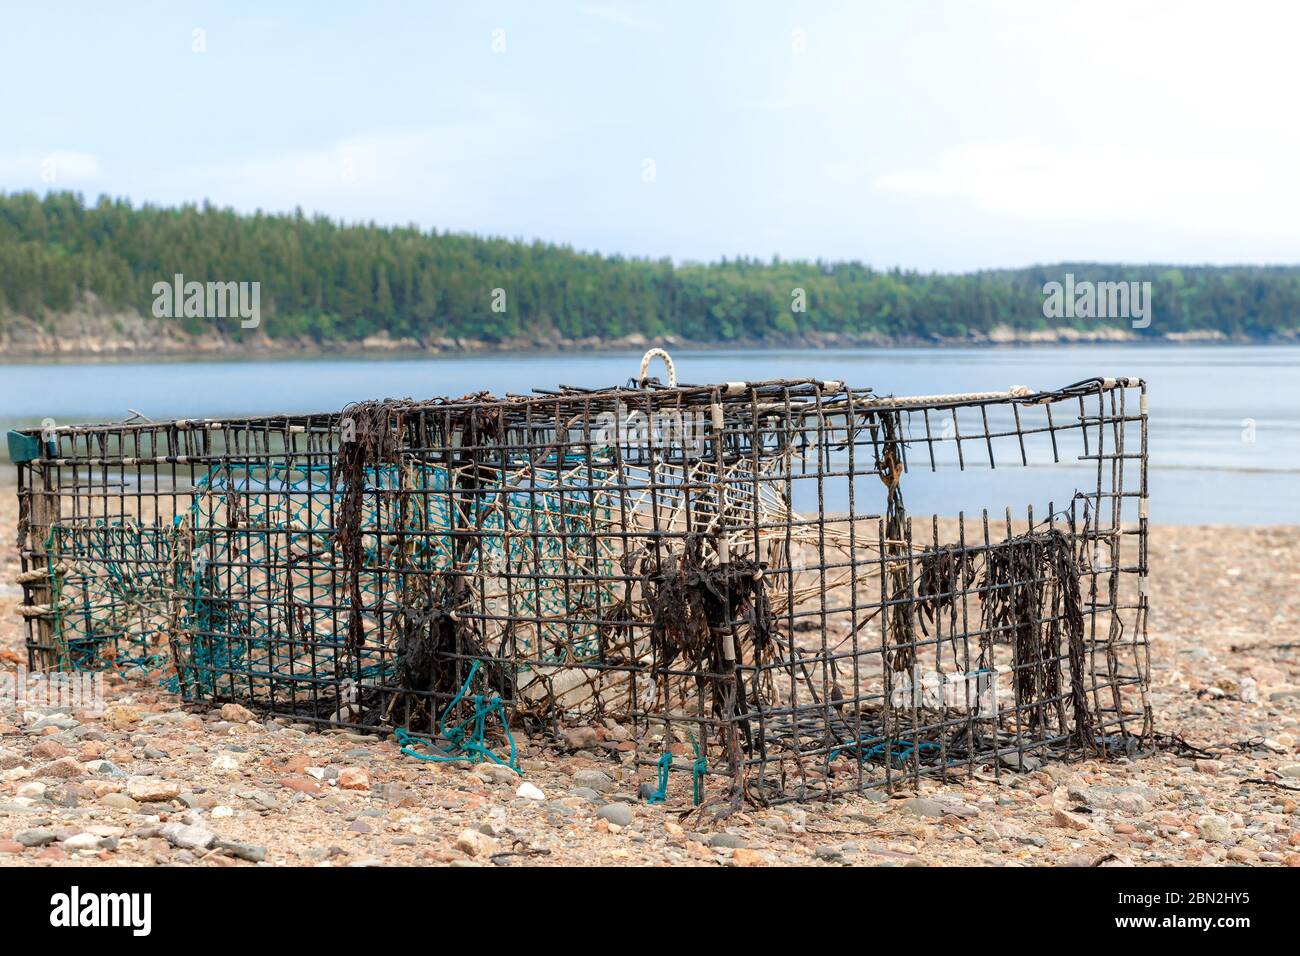 Un vieux piège à homard en métal cassé à moitié enterré sur une plage au bord de l'océan. Il manque des morceaux de métal, et des morceaux de corde et d'algues y pendent. Voilé Banque D'Images